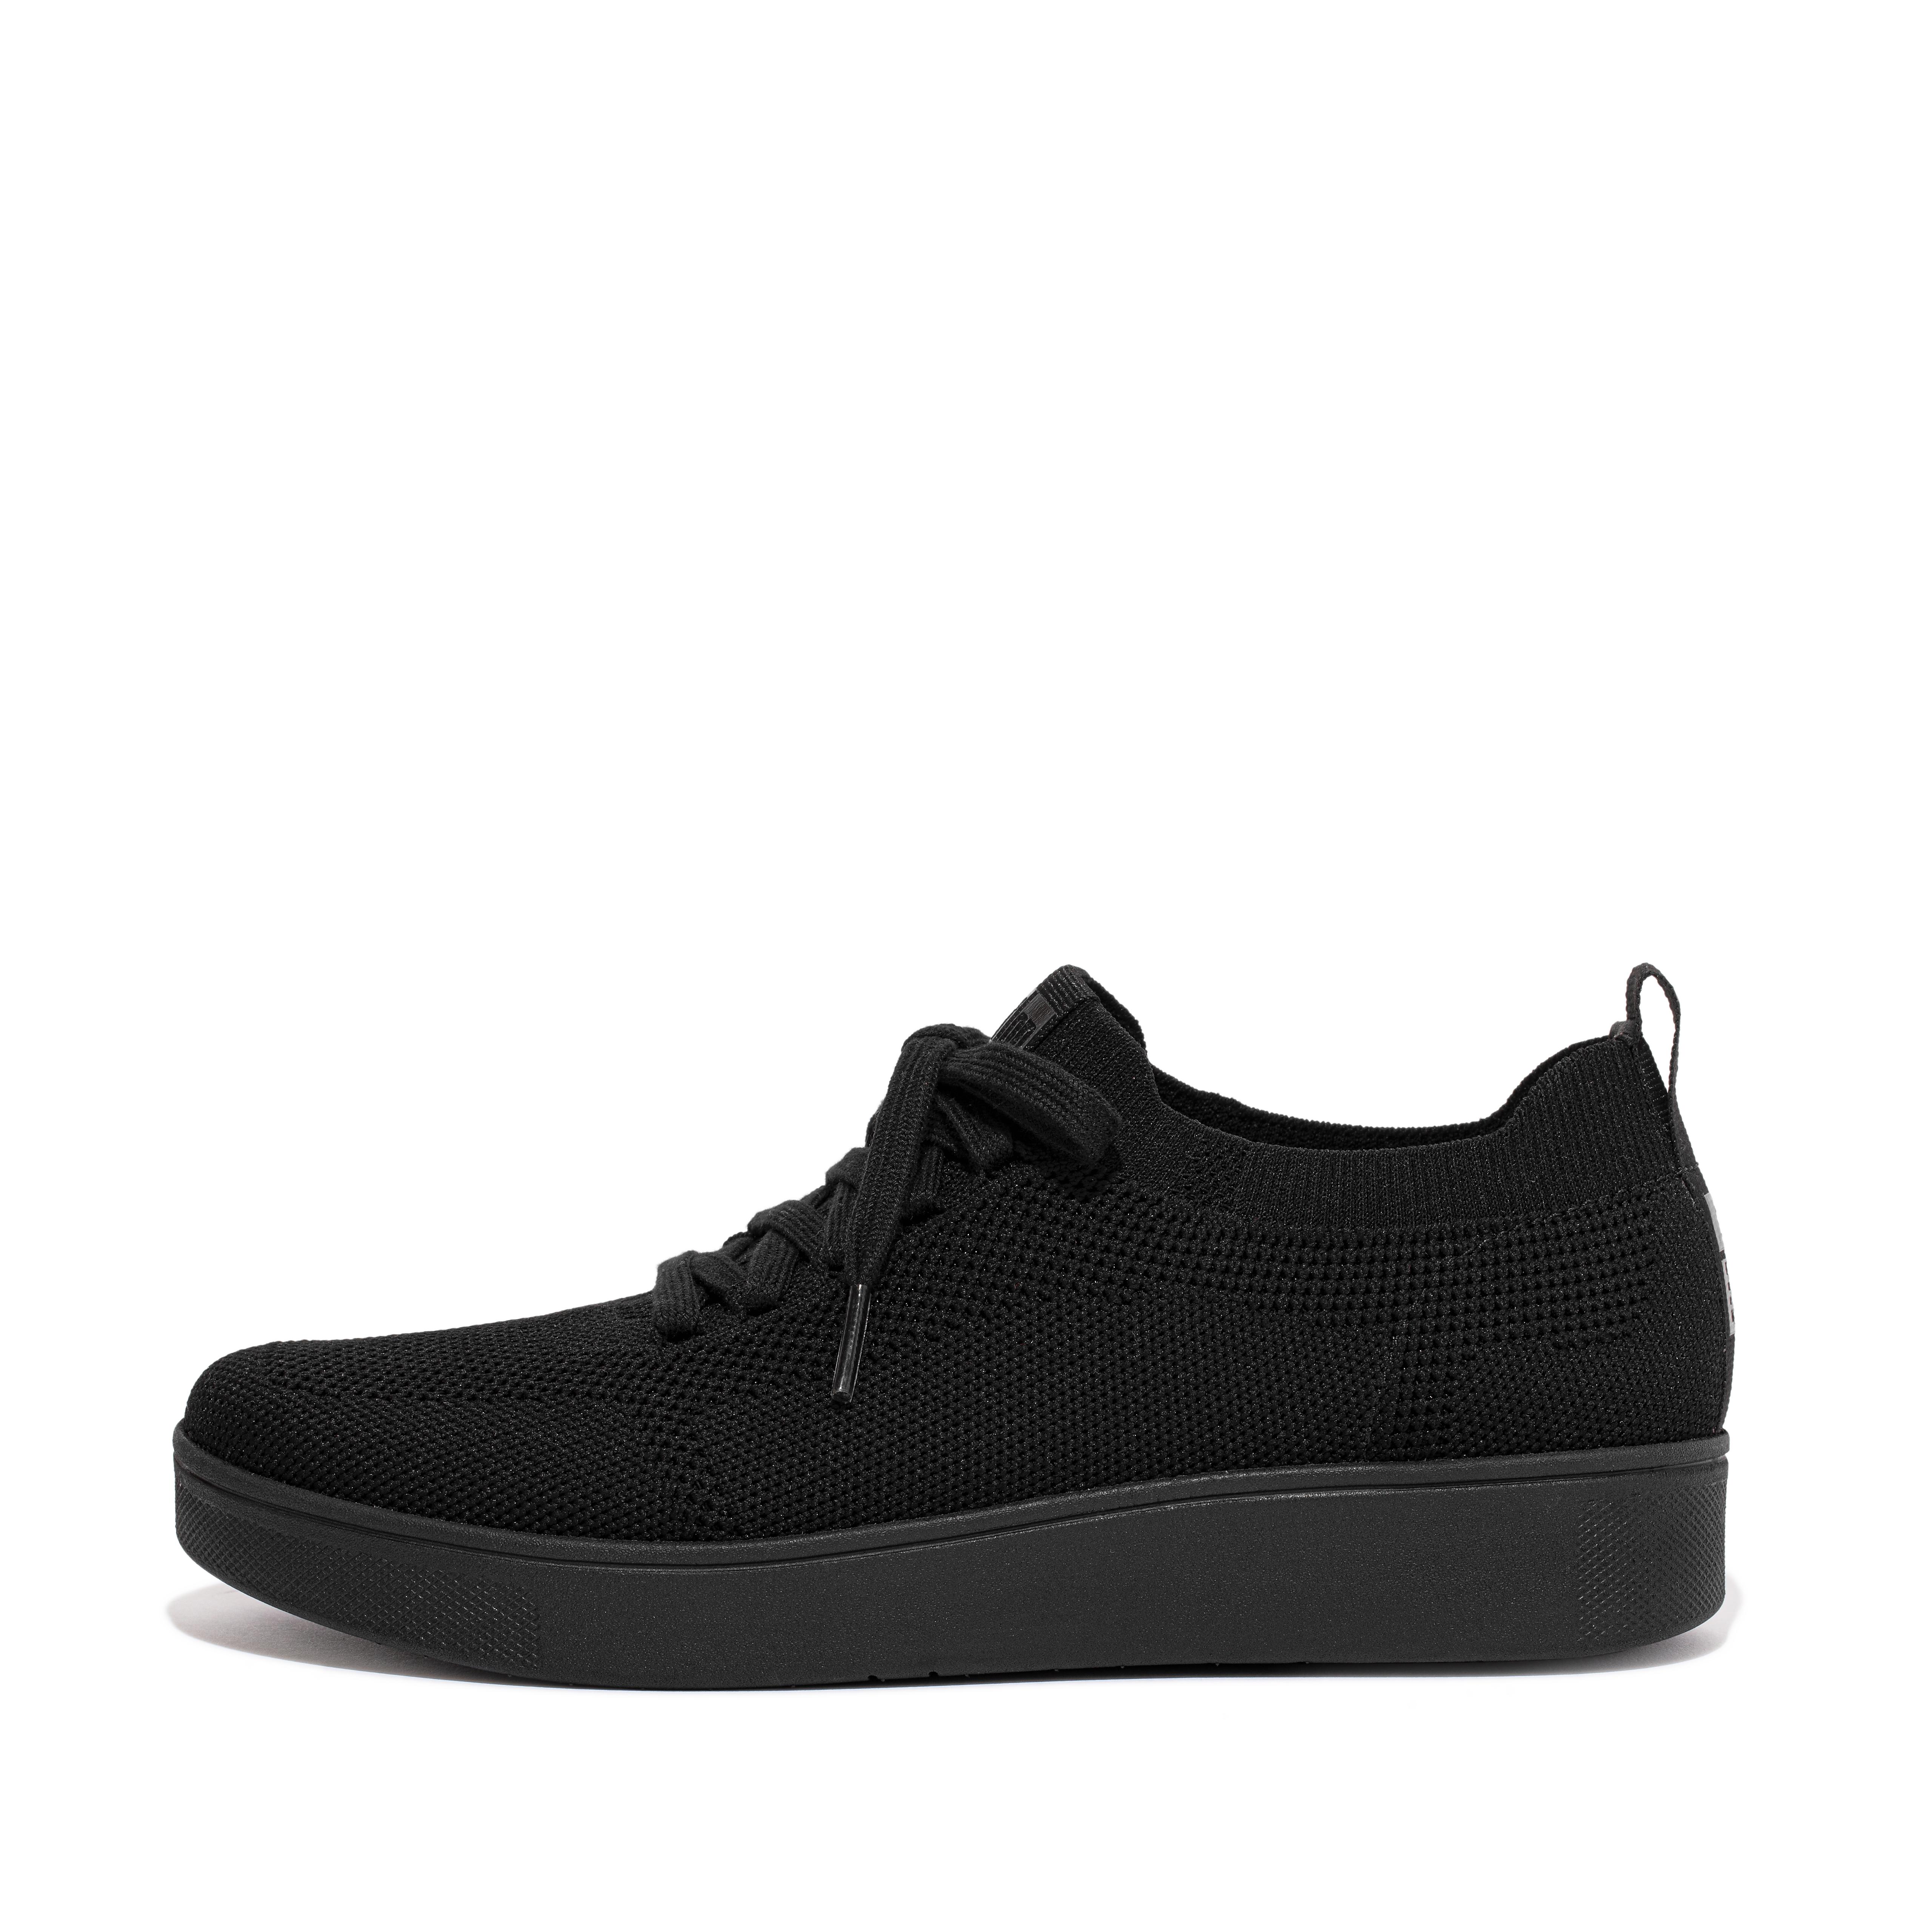 핏플랍 스니커즈 FitFlop RALLY Water-Resistant Knit Sneakers,All Black